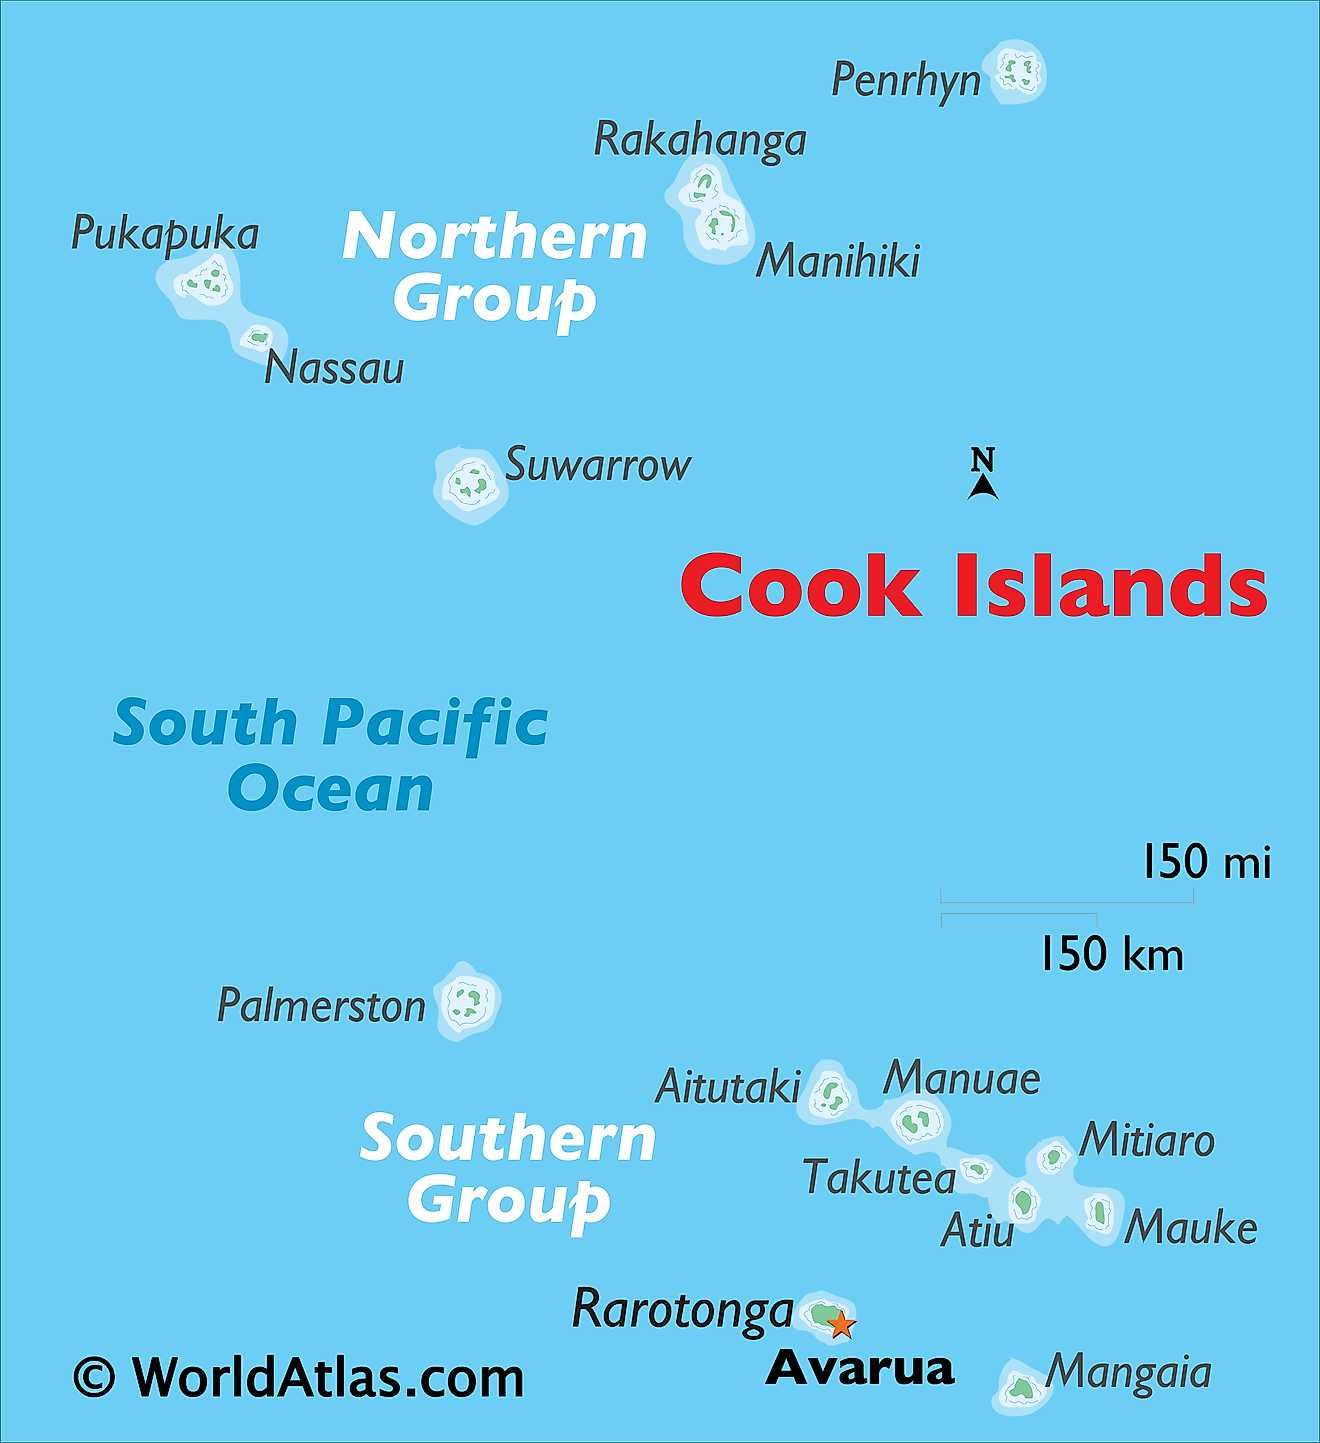 El mapa físico de las Islas Cook que muestra las principales islas del país insular.